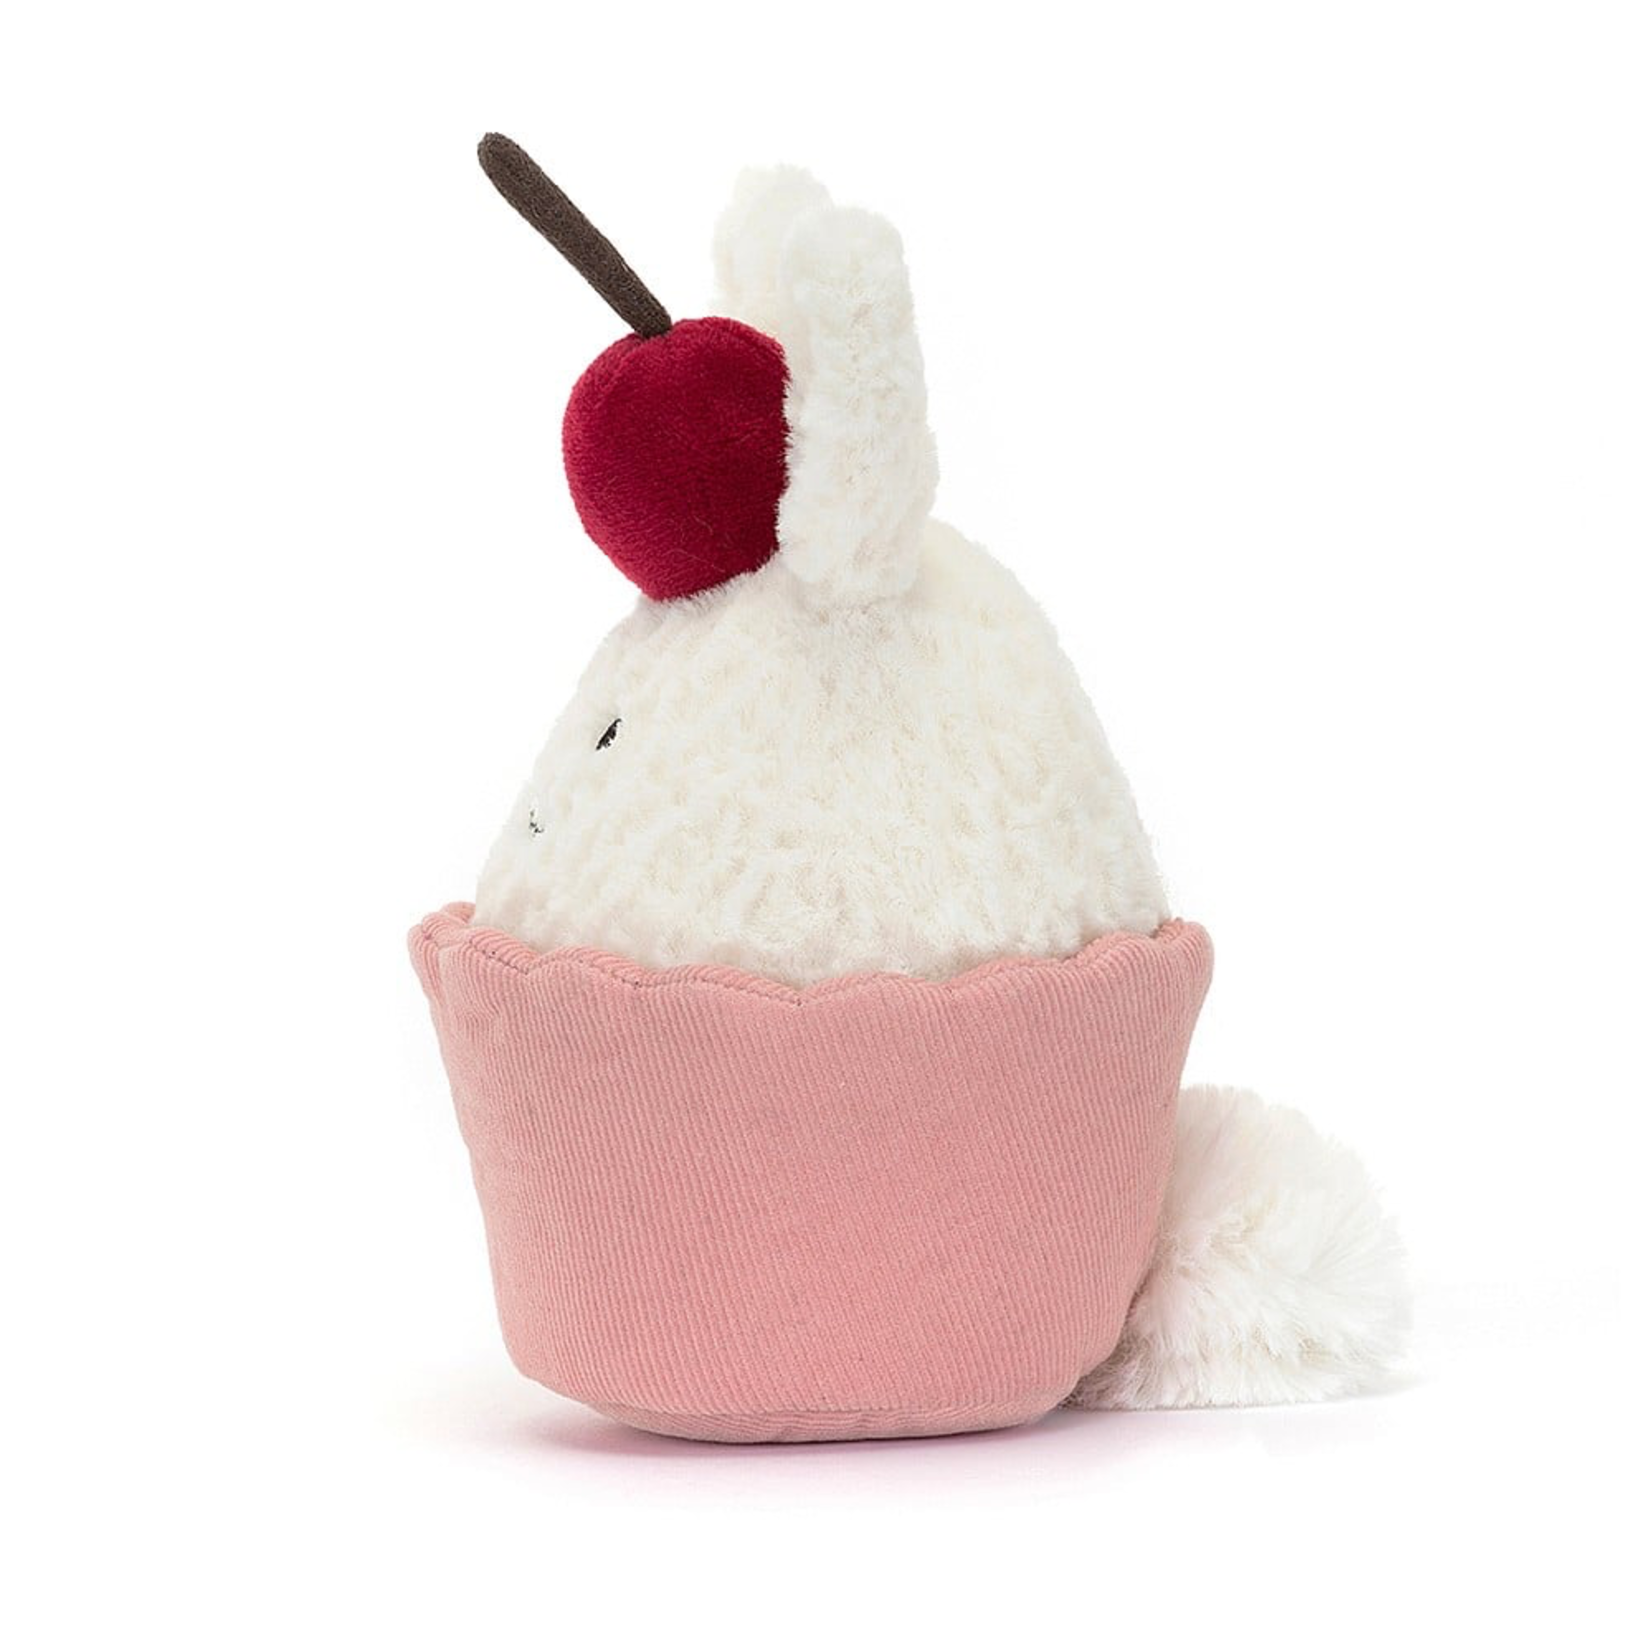 Jellycat - Fresh & Foodie Jellycat - Dainty Dessert Bunny Cupcake